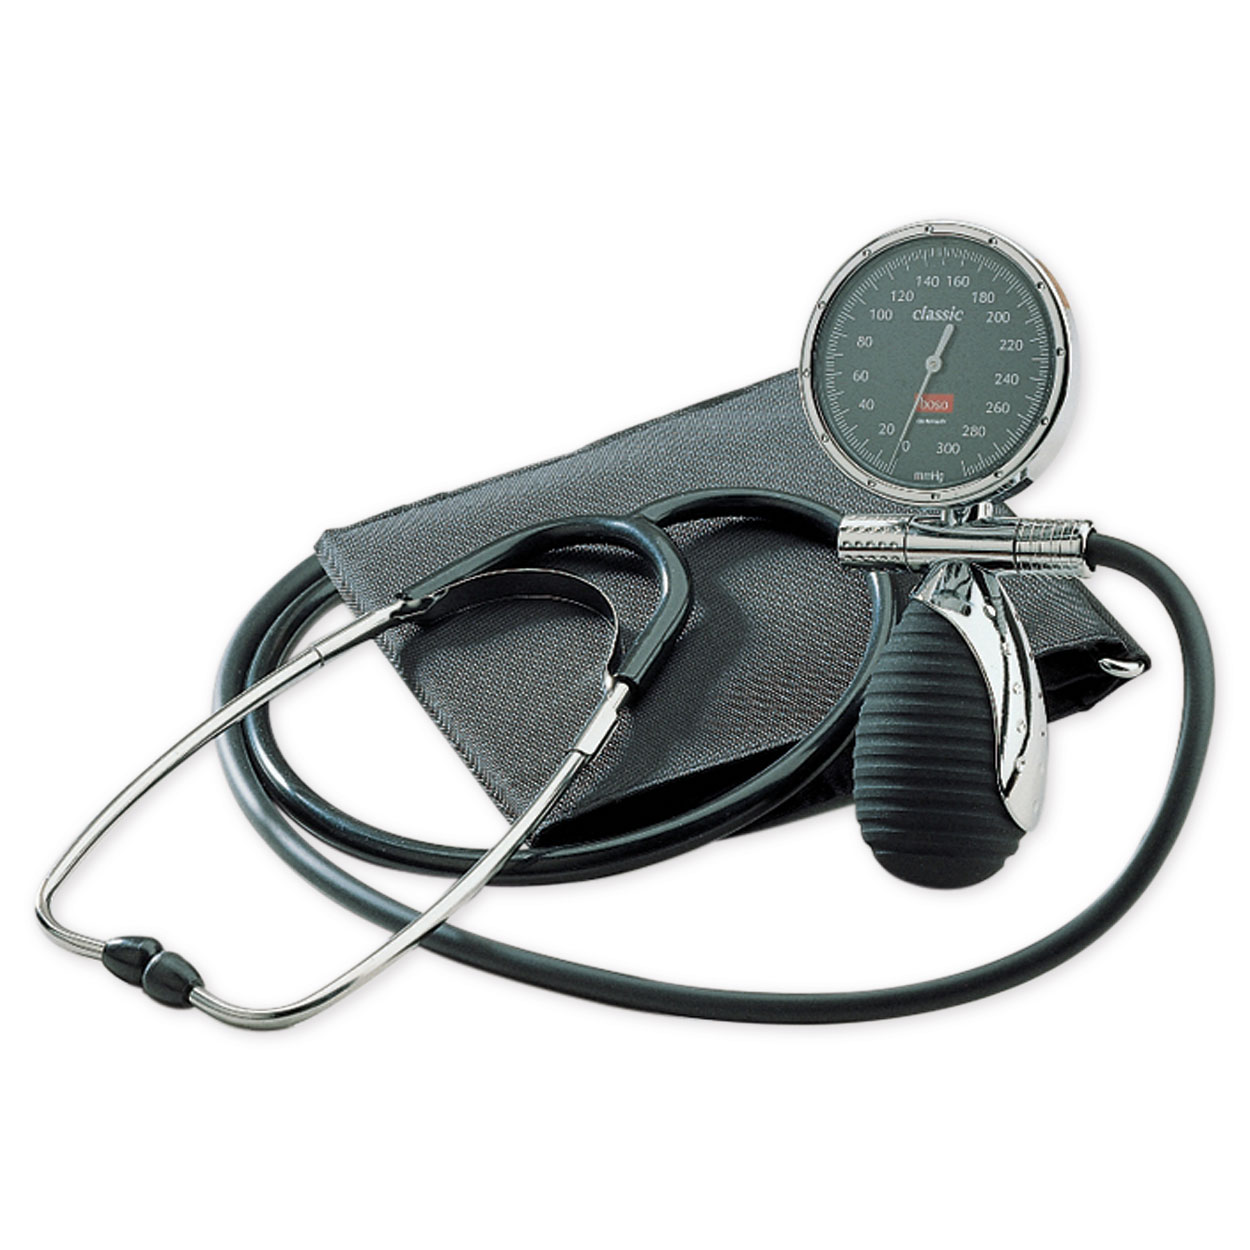 boso classic, Blutdruckmessgerät mit Klettenmanschette, Ø 60 mm